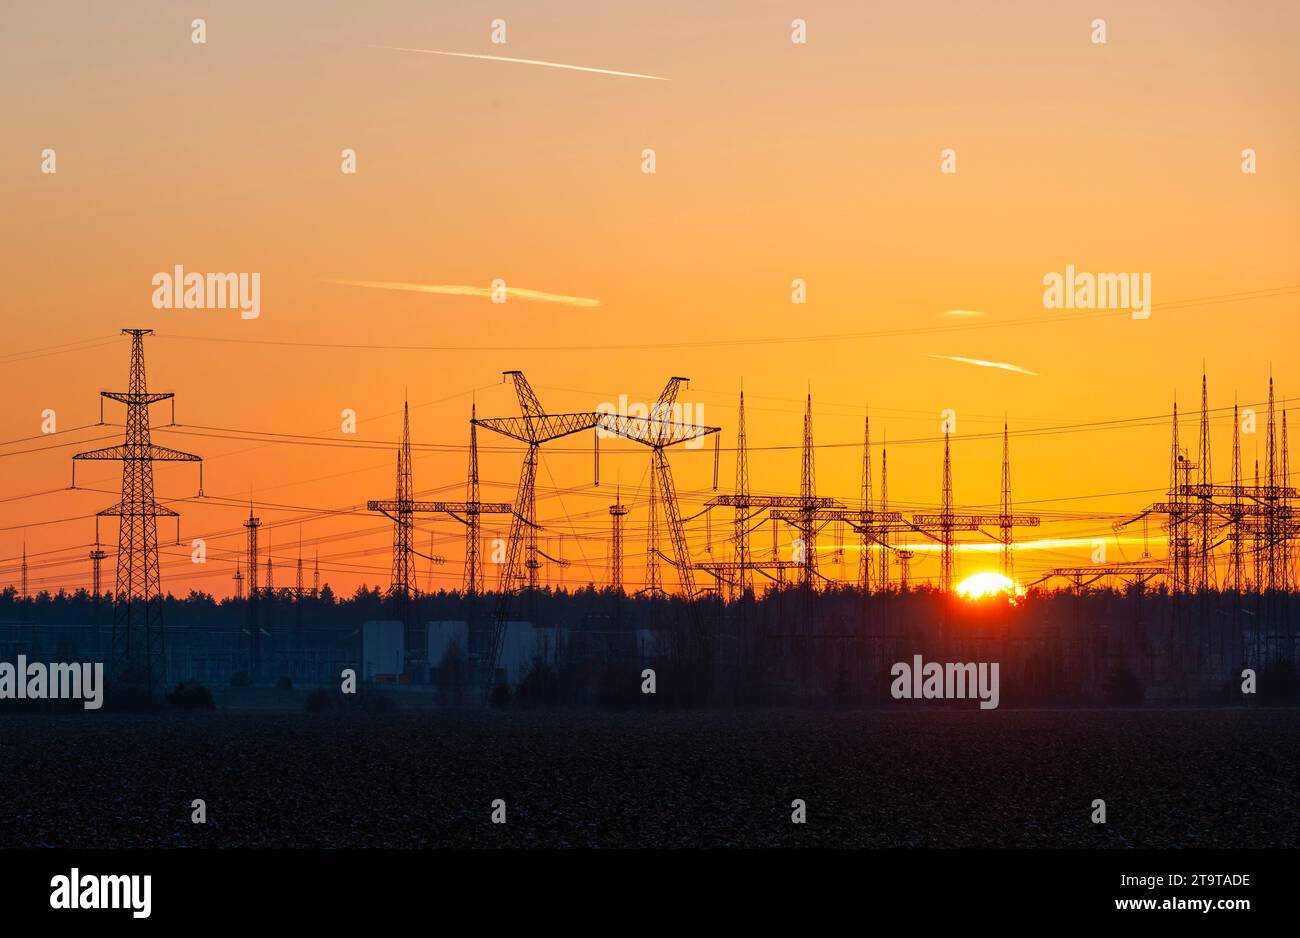 La silhouette della sottostazione elettrica e le linee elettriche si affacciano sullo splendido cielo serale al tramonto Foto Stock